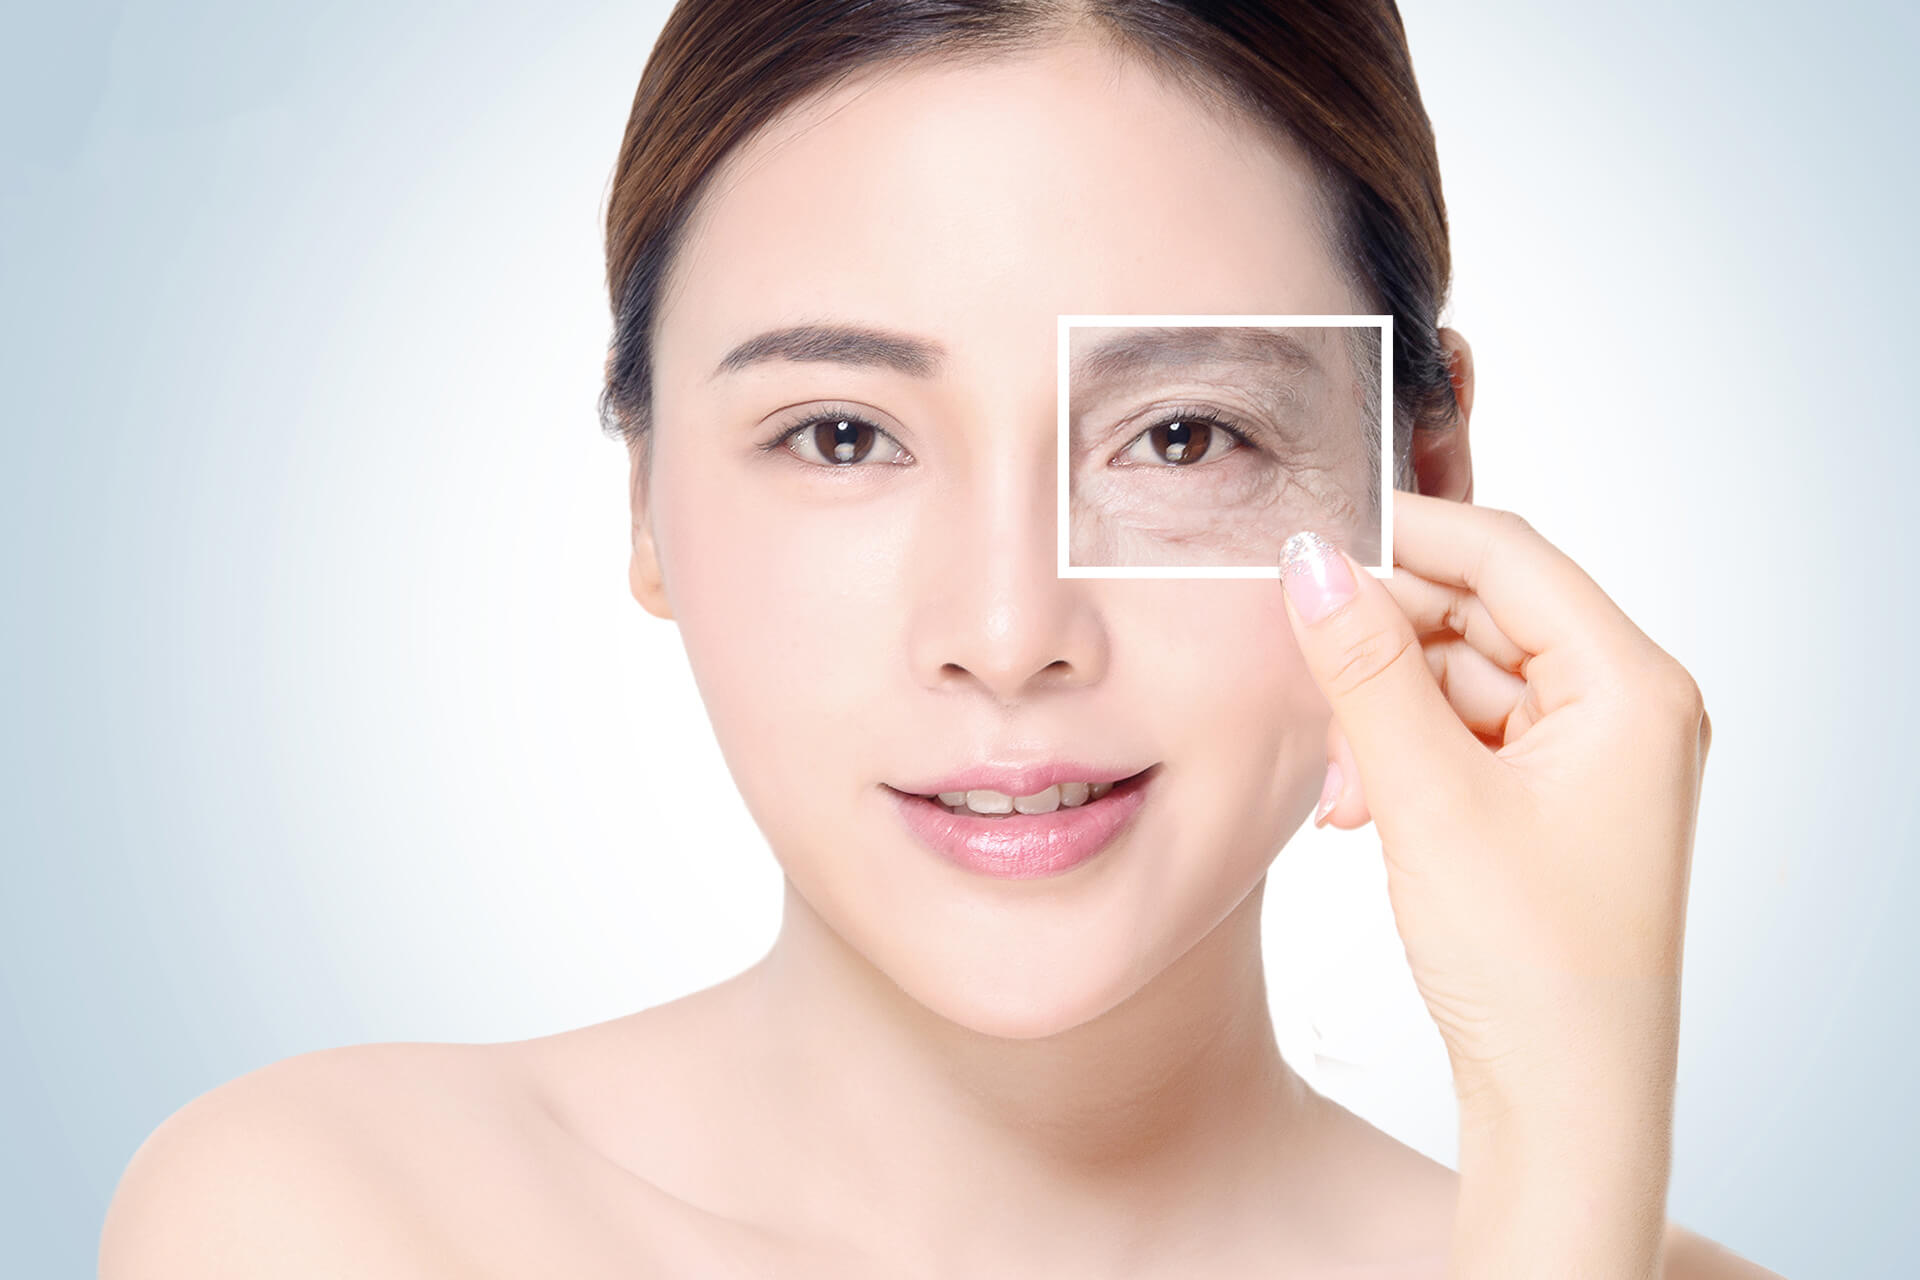 Kem chống nhăn vùng mắt hiệu quả không thể thiếu một số thành phần như Retinol, vitamin, peptide…